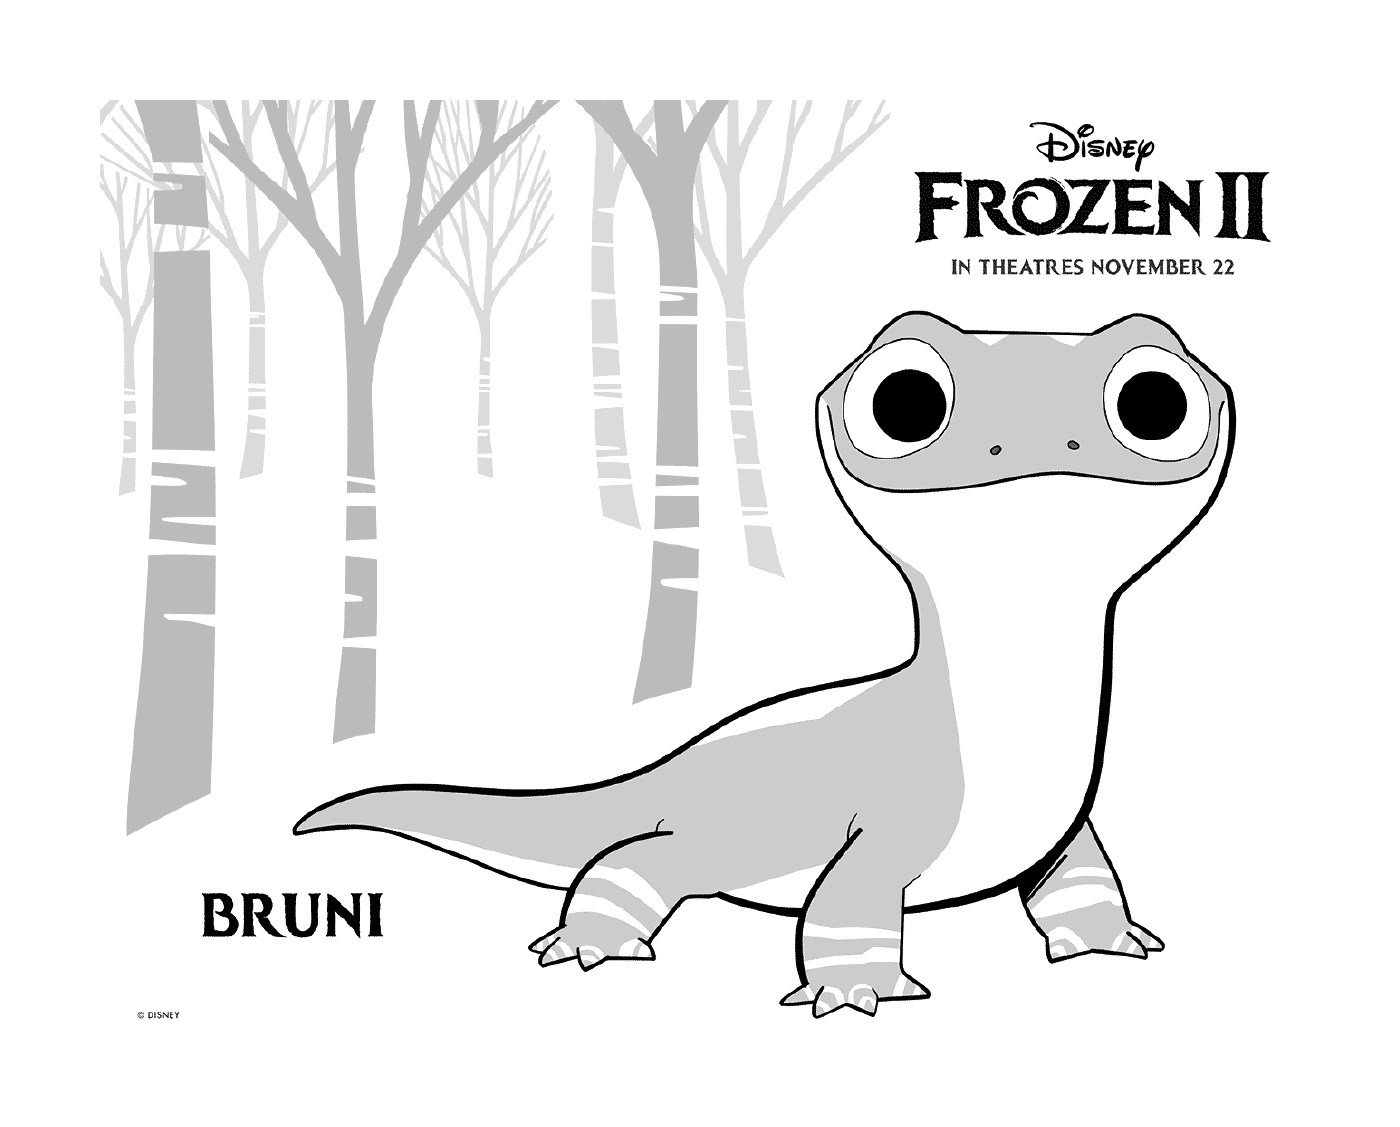  Bruni, Disney's Fire Salamander The Snow Queen 2 